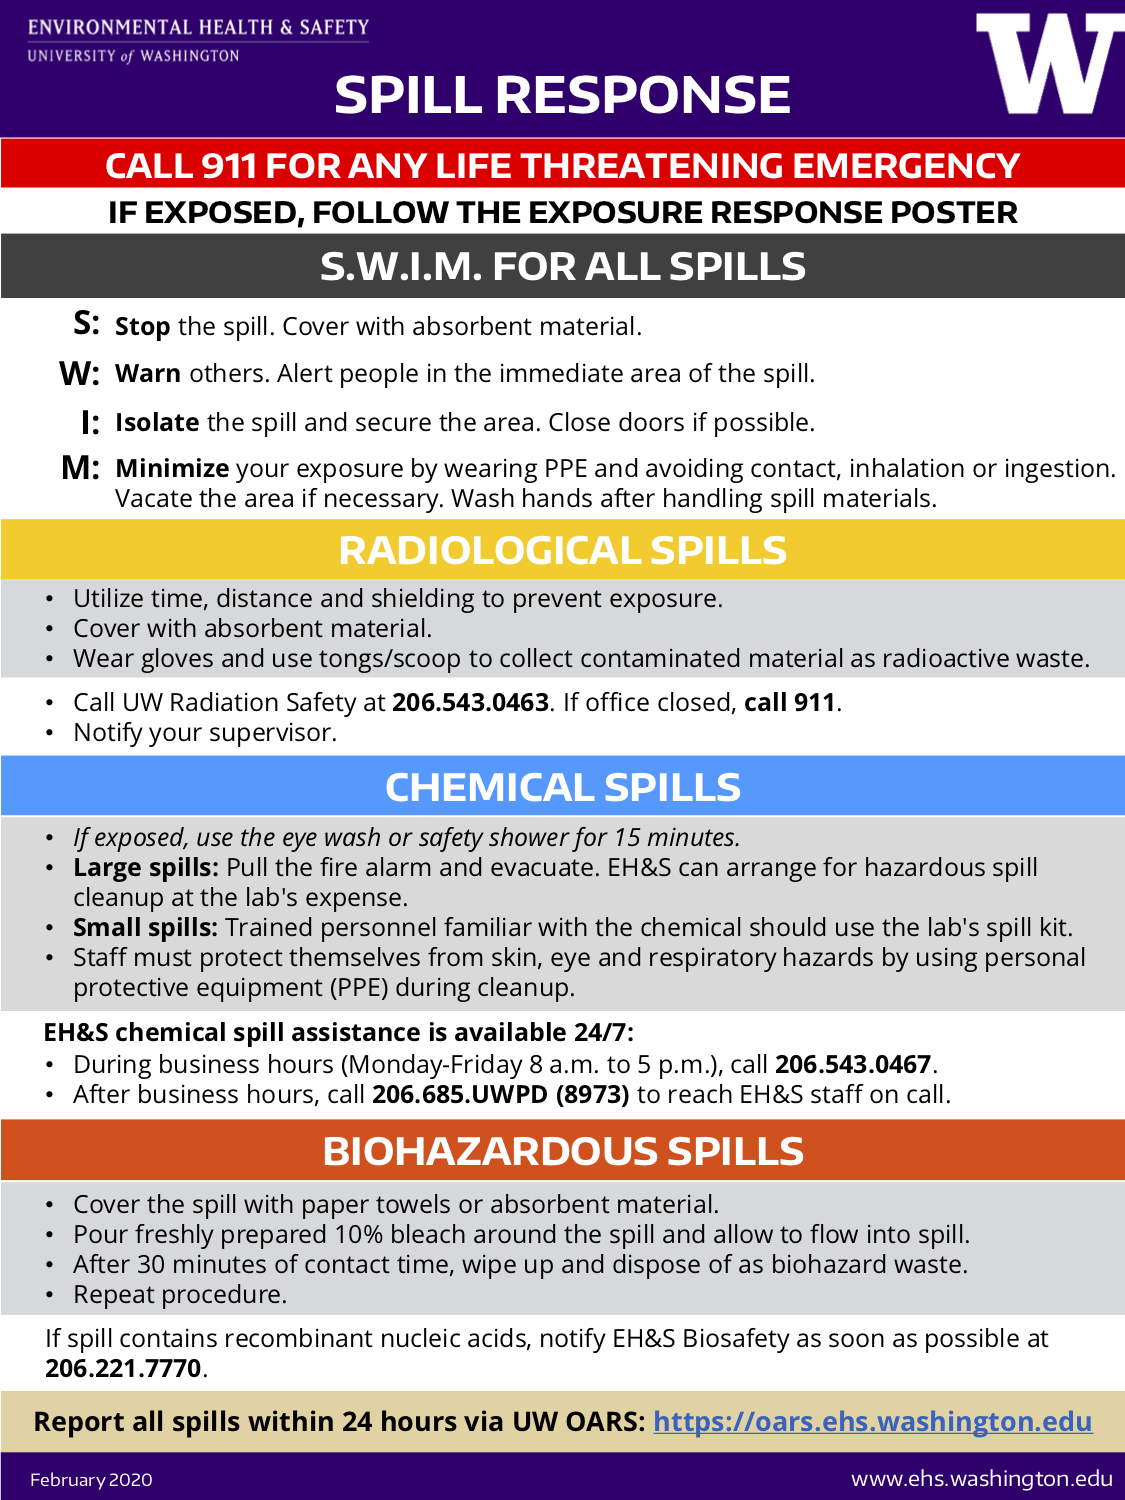 EHS spill response poster